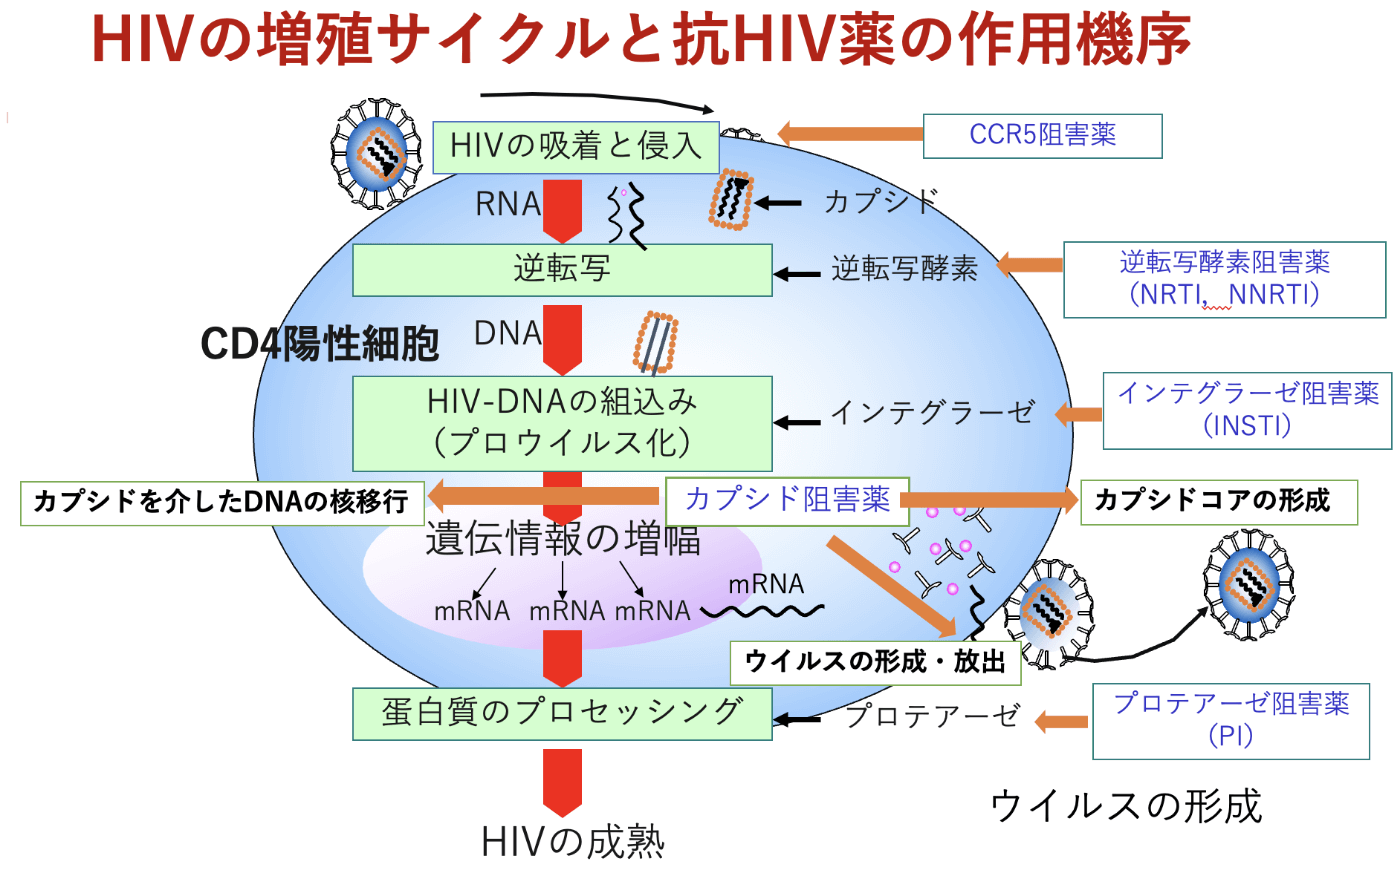 HIVの増殖サイクルと抗HIV薬の作用機序